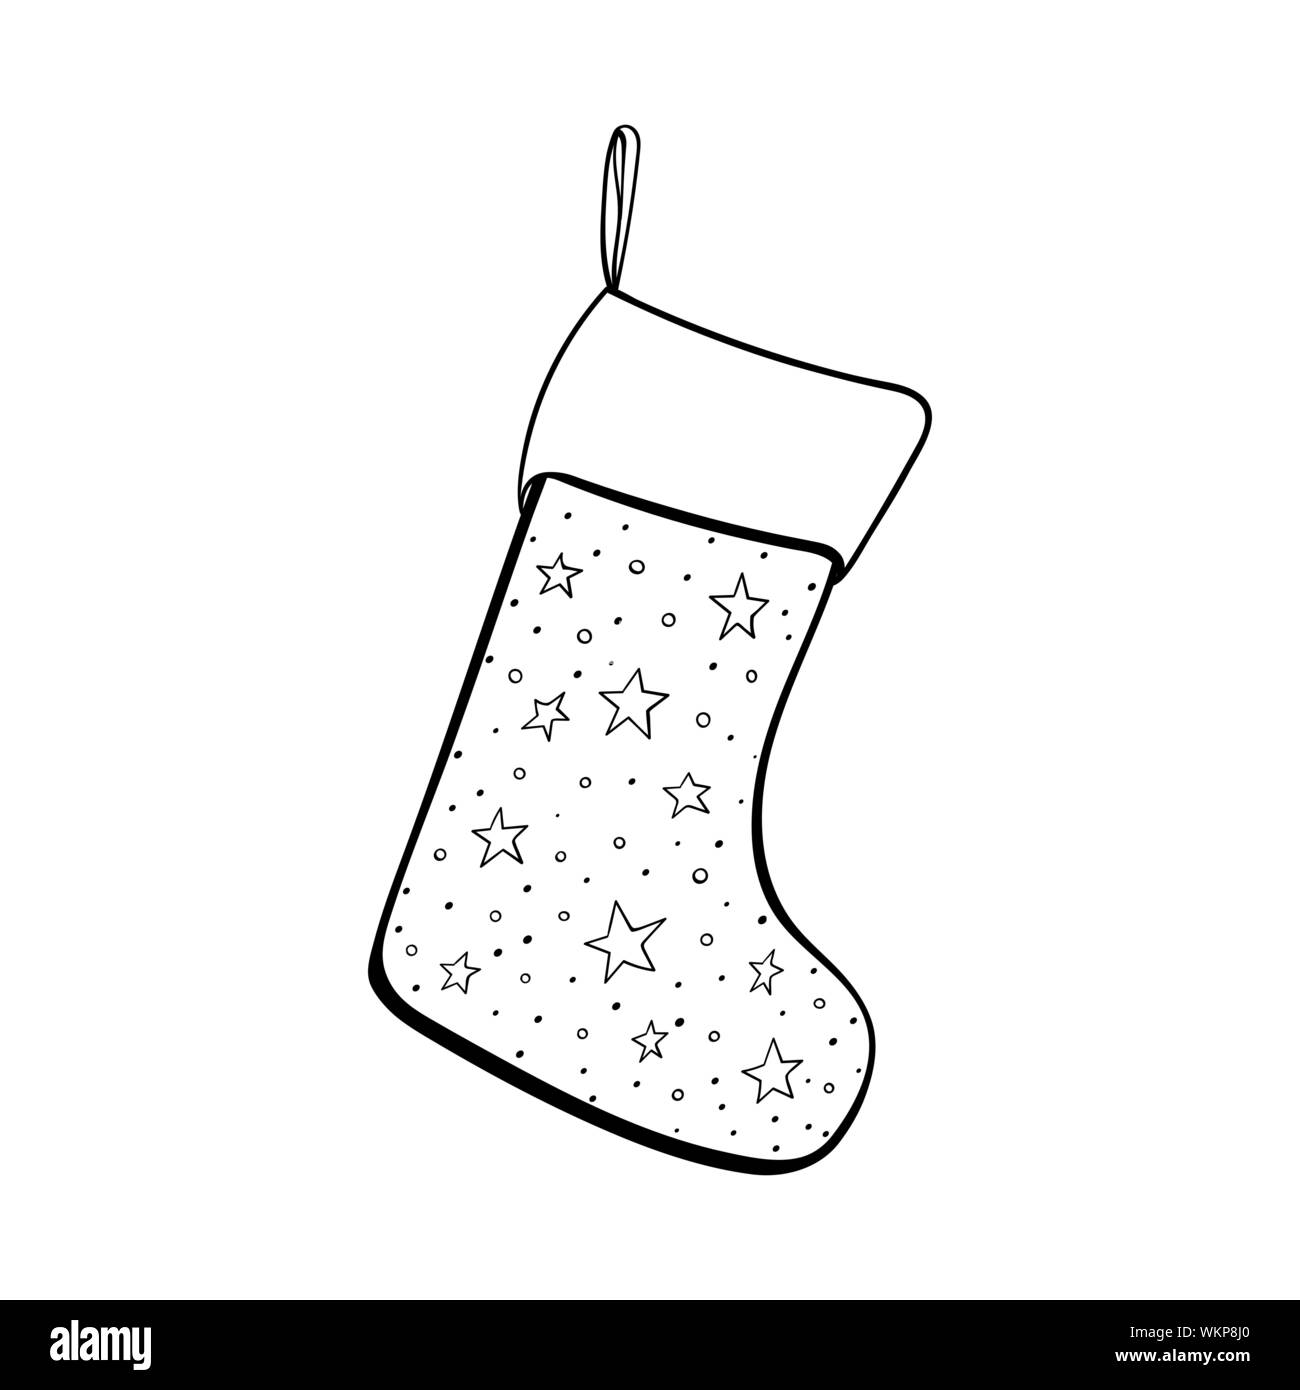 Weihnachten Socke Hand gezeichnet Vector Illustration. Leere xmas Stocking für Geschenke. Warme Schuhe mit Sternen Muster schwarze und weiße Zeichnung. Winterurlaub Tradition, das neue Jahr feier Attribut Stock Vektor